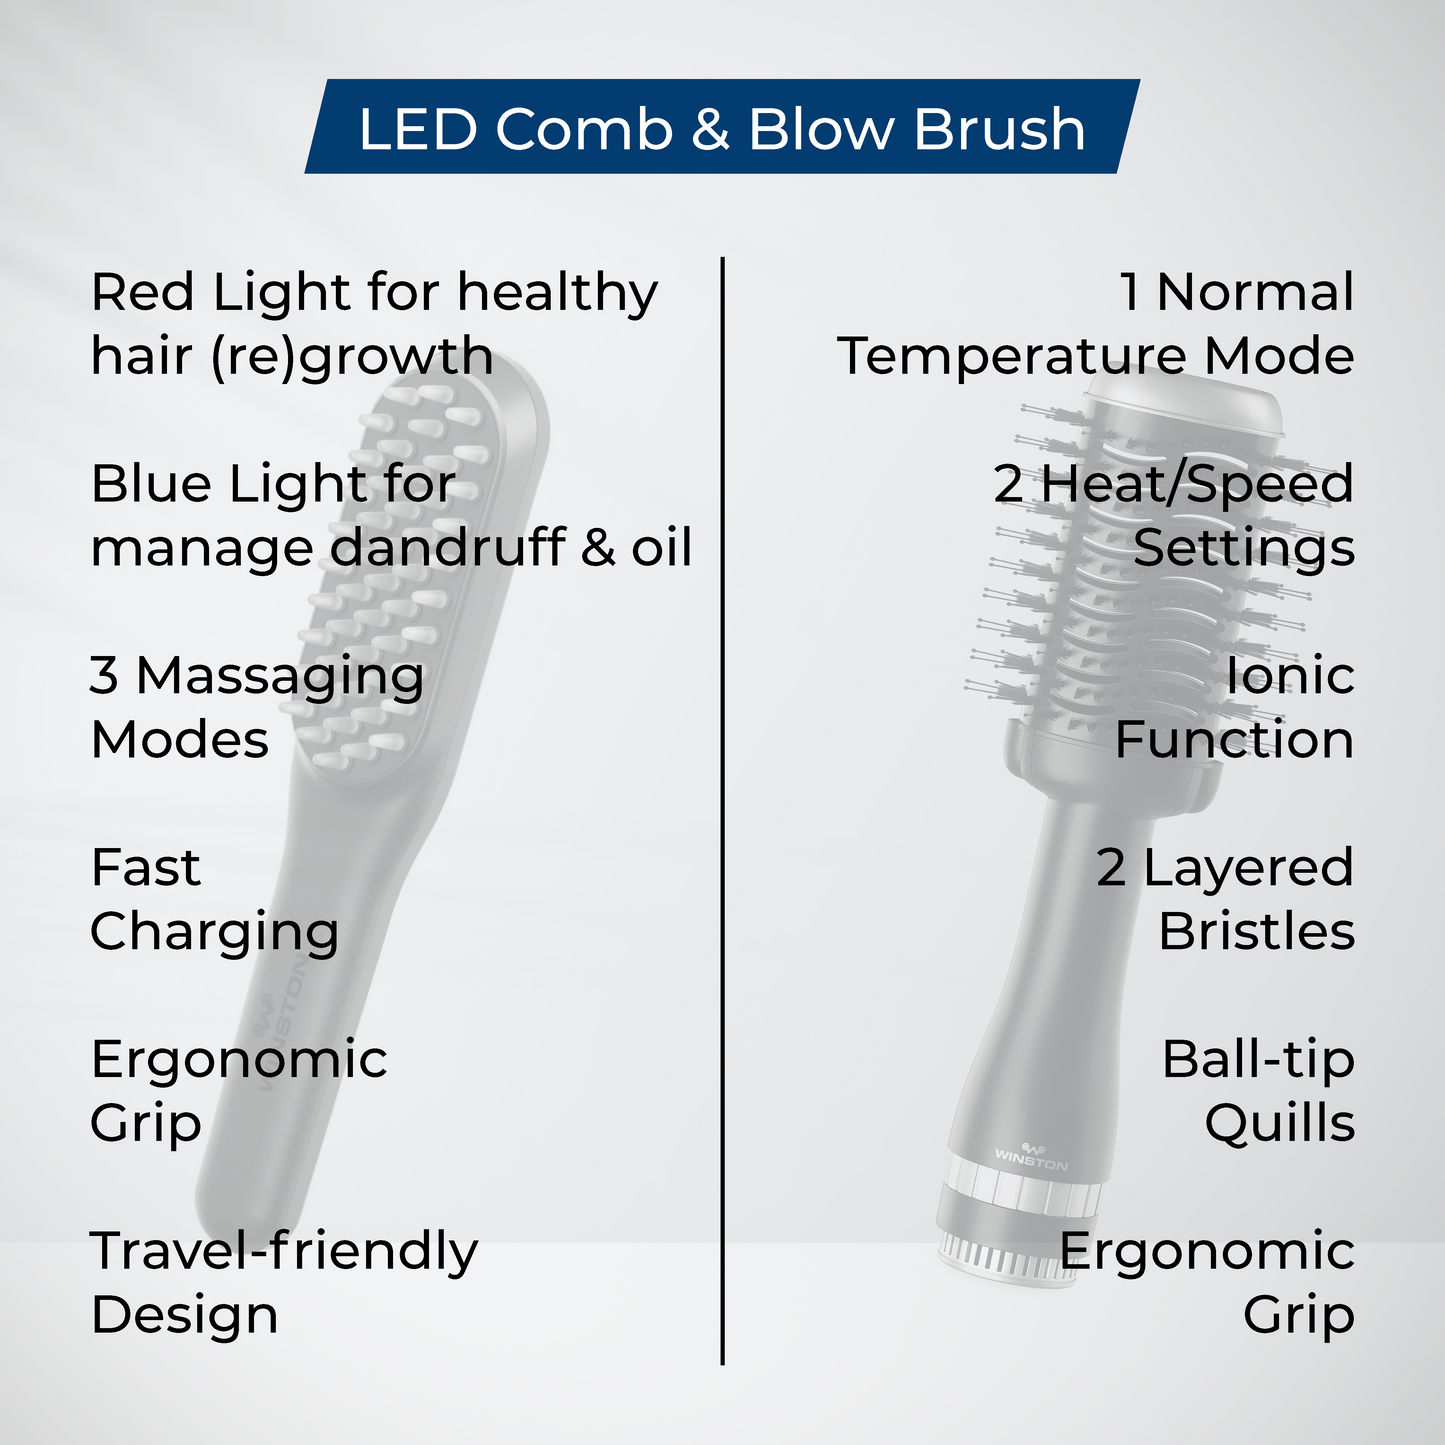 LED Comb & Blow Brush Combo